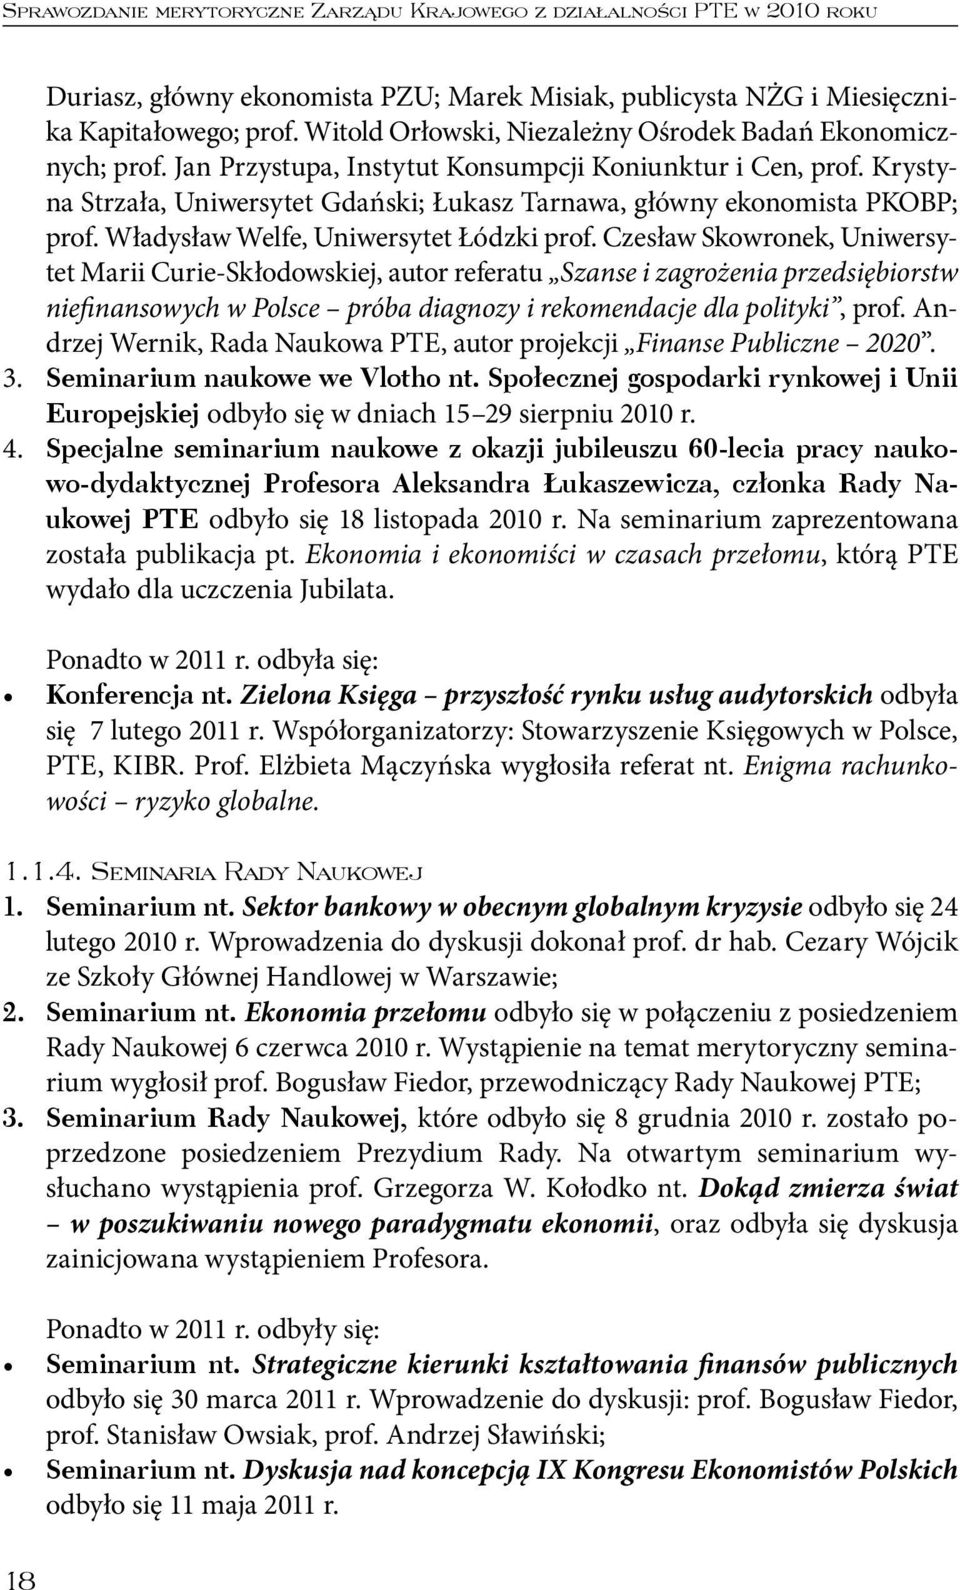 Krystyna Strzała, Uniwersytet Gdański; Łukasz Tarnawa, główny ekonomista PKOBP; prof. Władysław Welfe, Uniwersytet Łódzki prof.